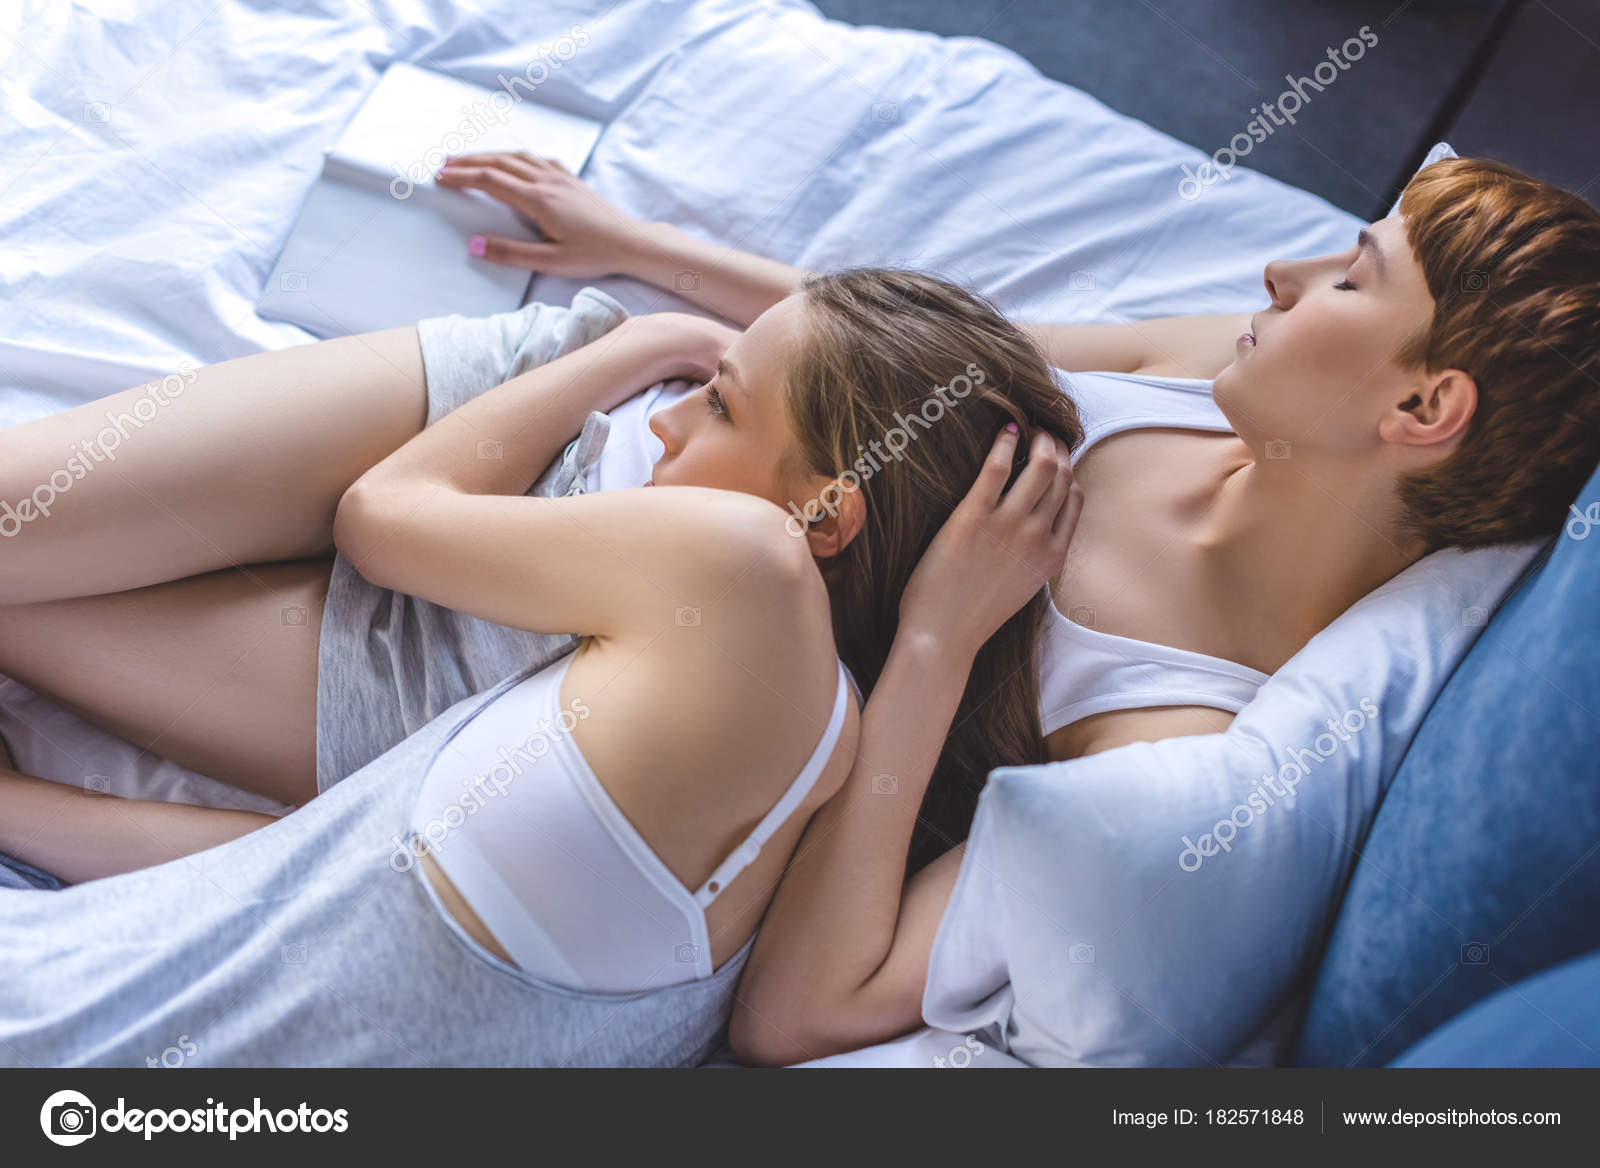 Молодые лесбиянки разрабатывают киски на постели с помощью секс игрушек